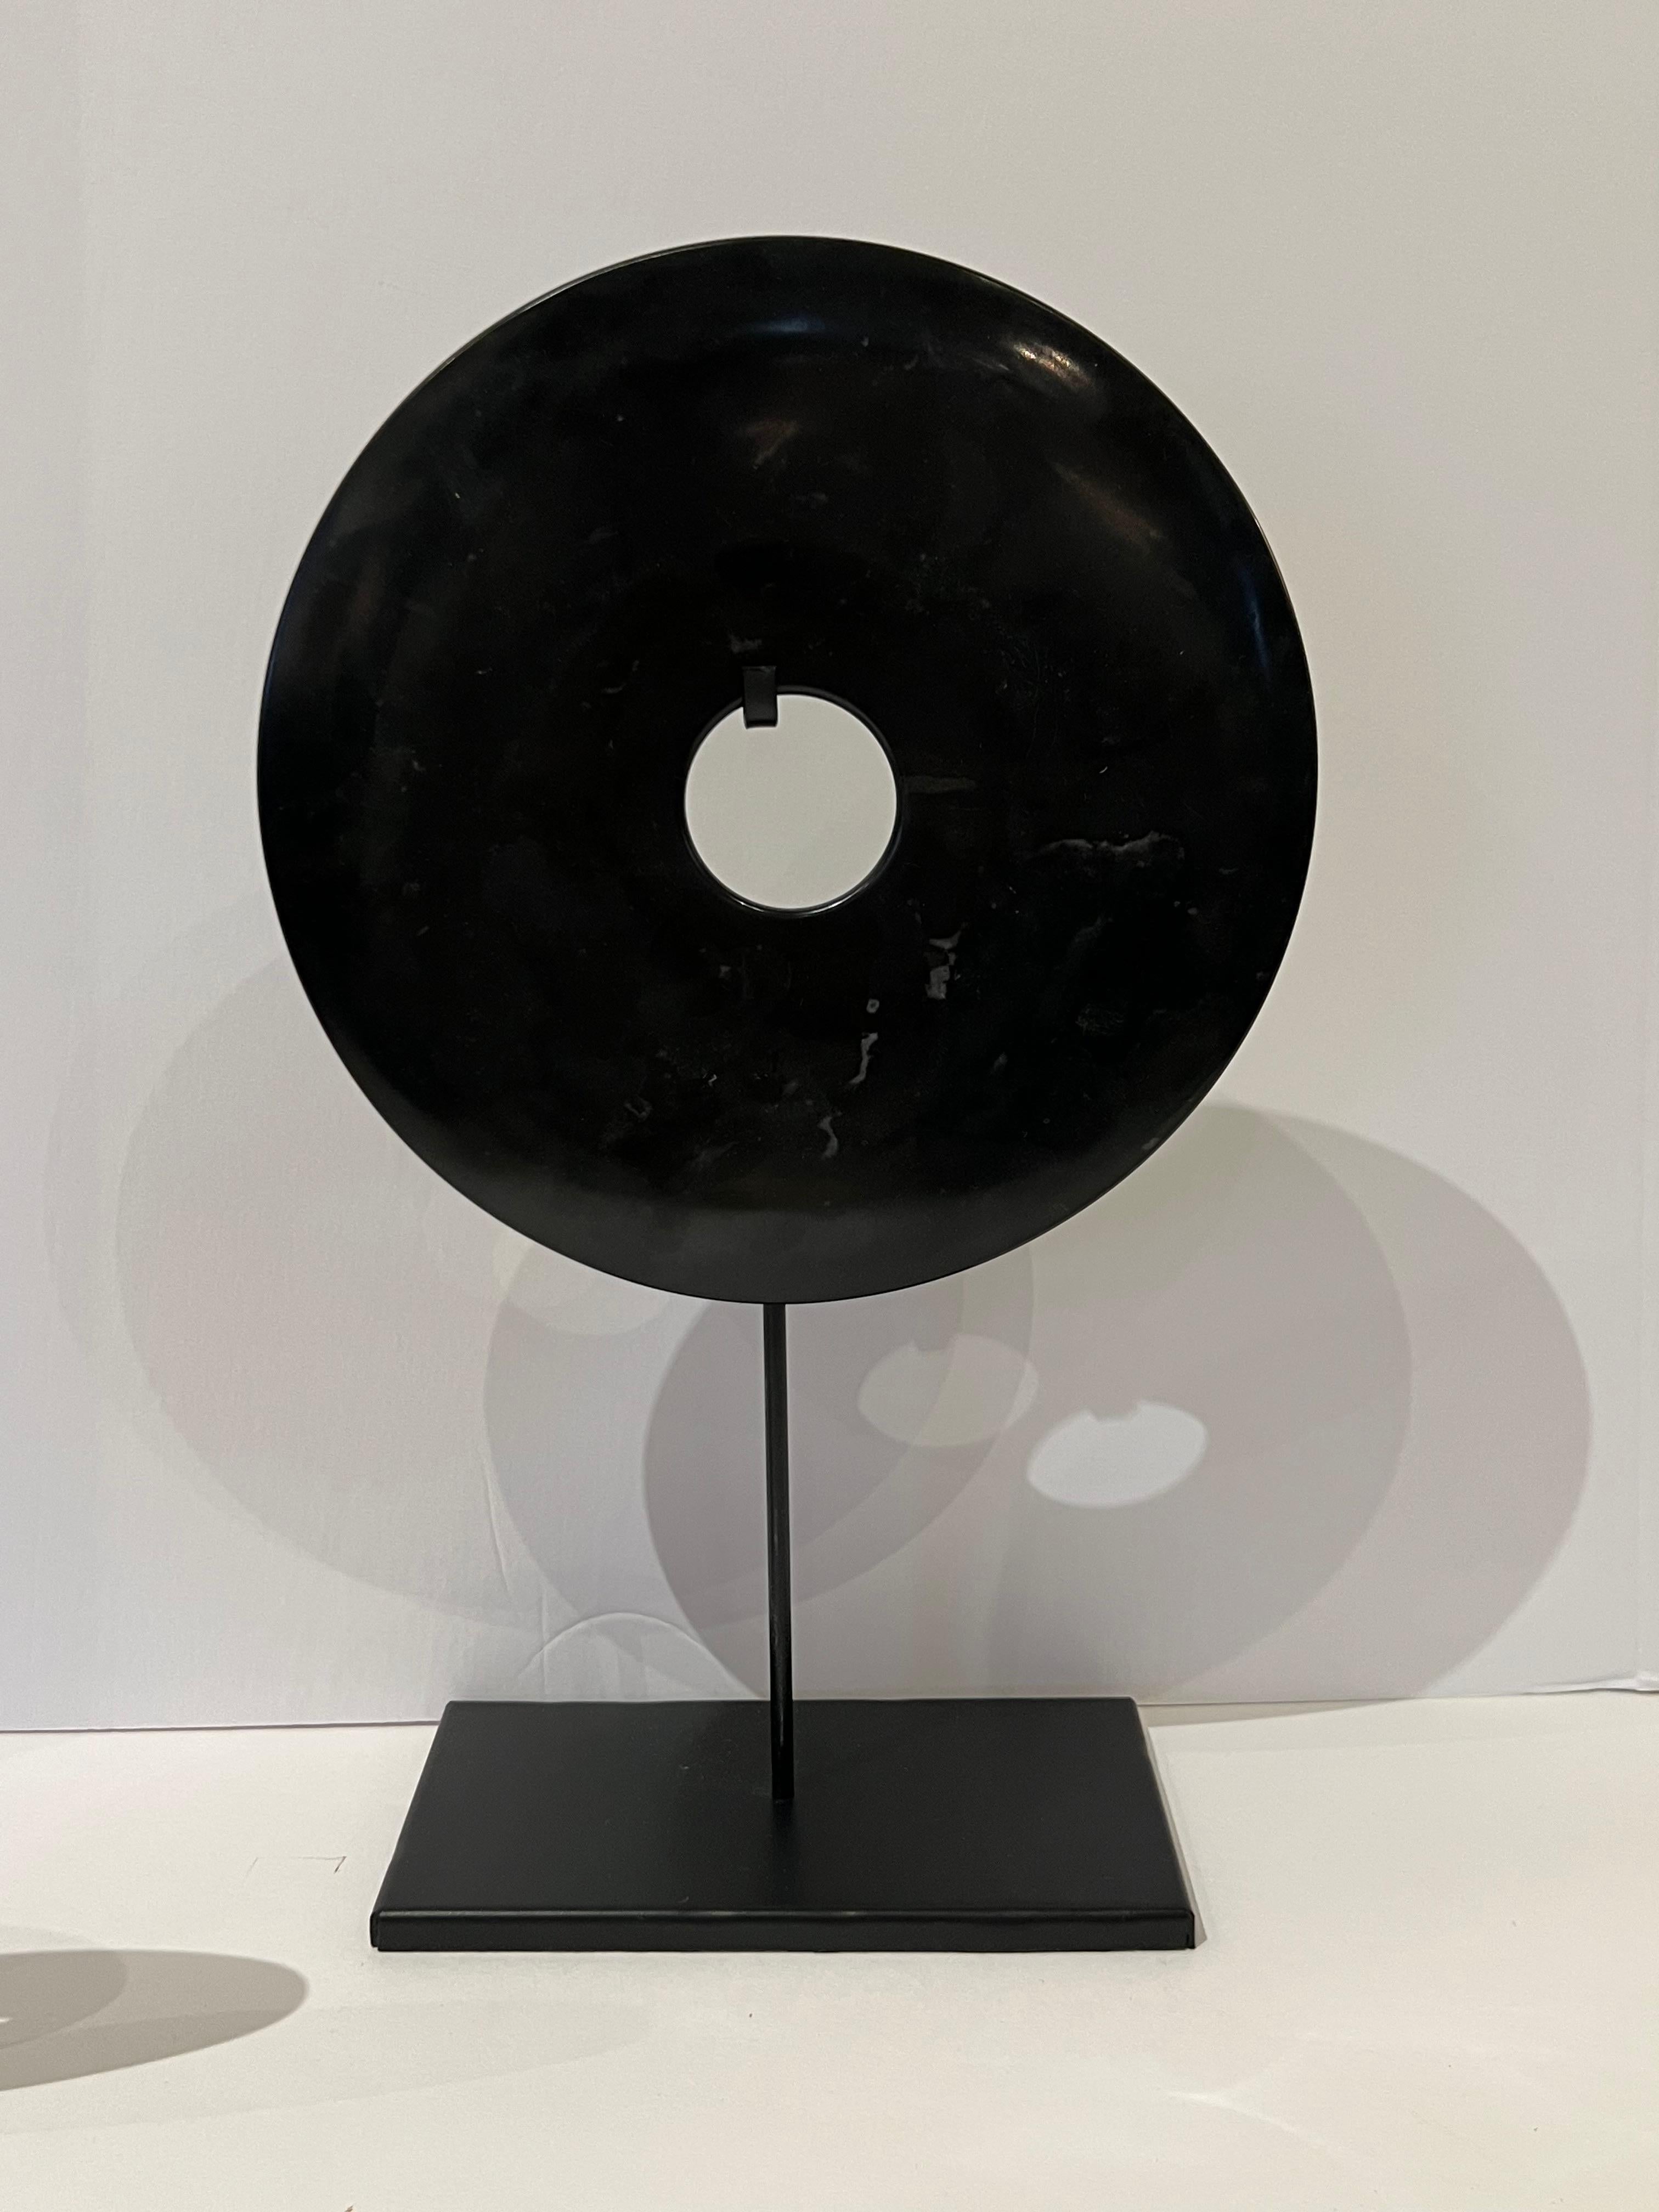 Ensemble chinois contemporain de trois disques lisses en jade noir sur socle.
Groupement de trois tailles différentes.
Également disponible en jade blanc lisse. (S6447 )
6